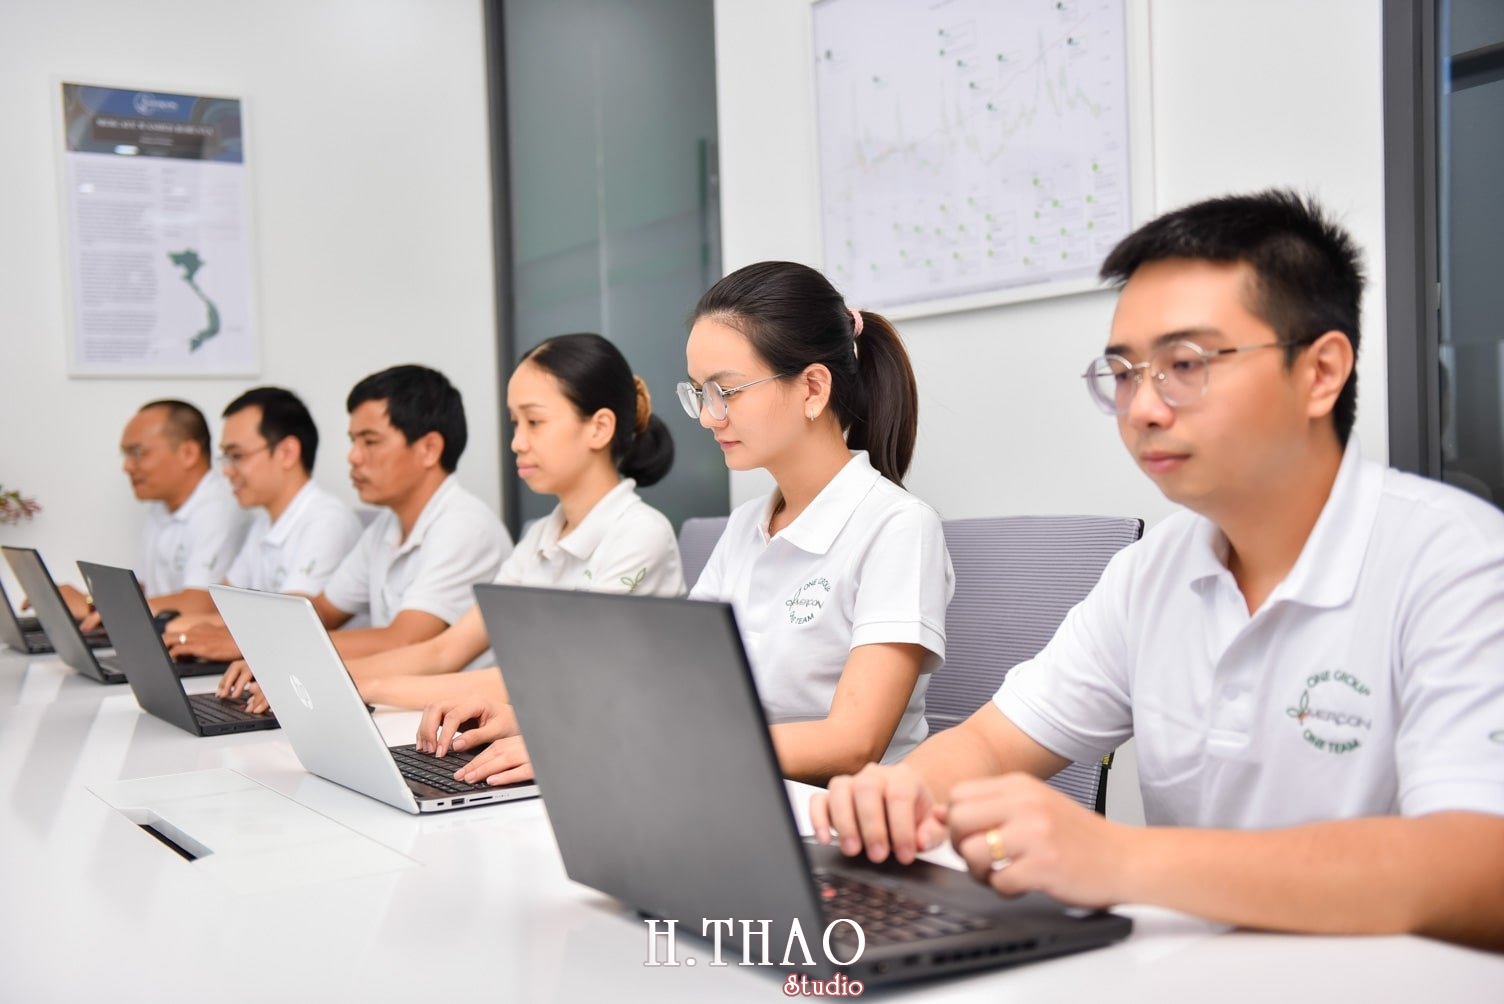 anh cong ty 7 min - Studio chụp ảnh quảng cáo doanh nghiệp tại Tp.HCM – HThao Studio